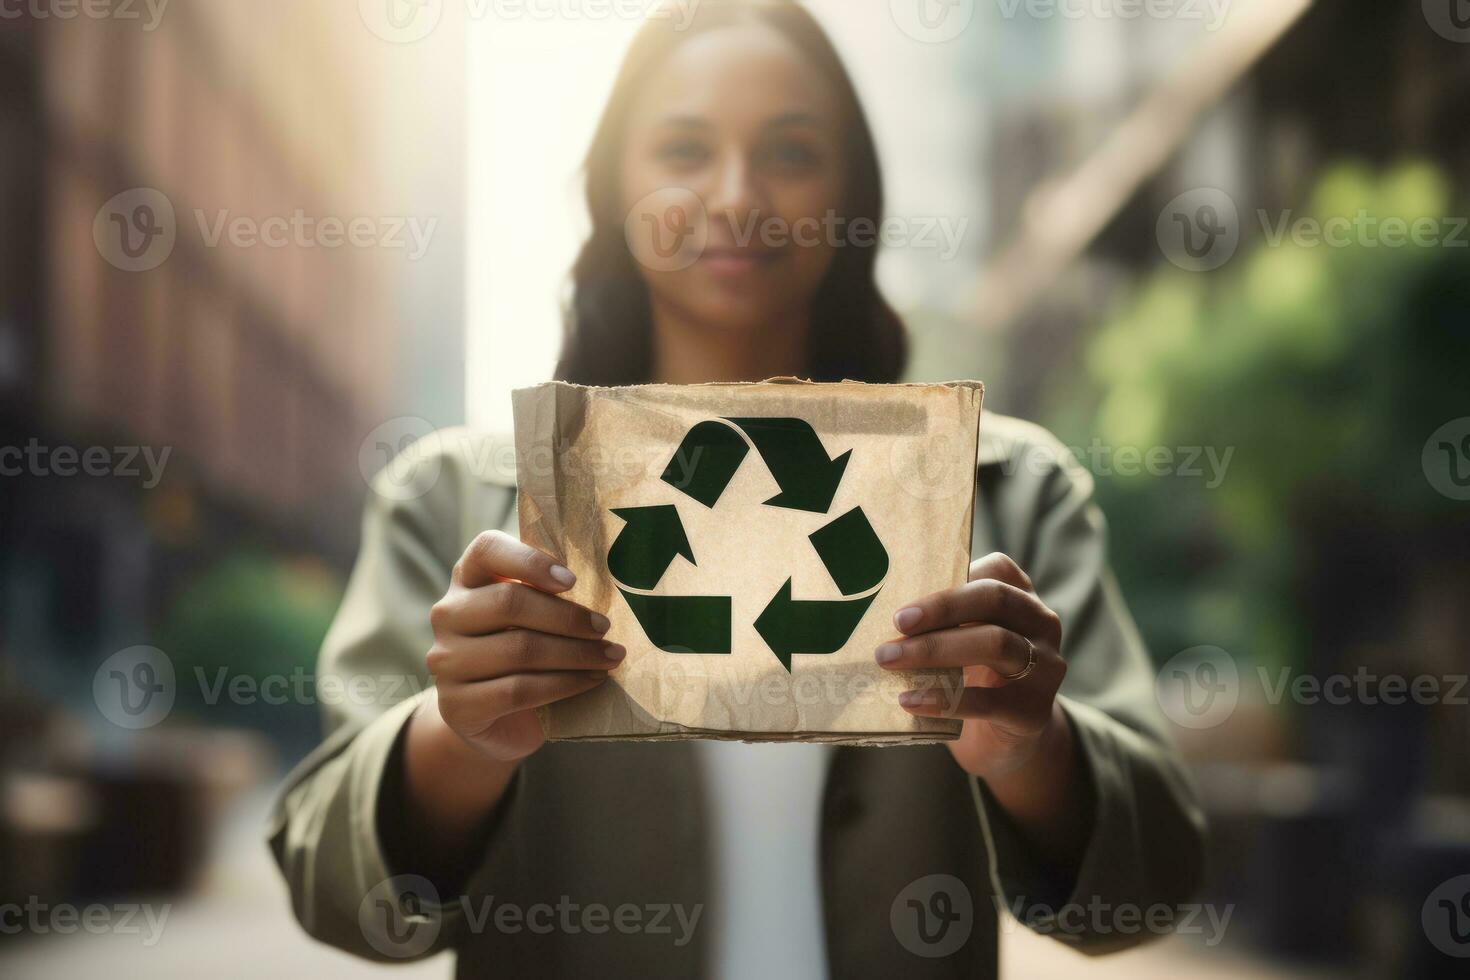 recycler symbole sur main et sac, durable et éco environnement concept. génératif ai photo